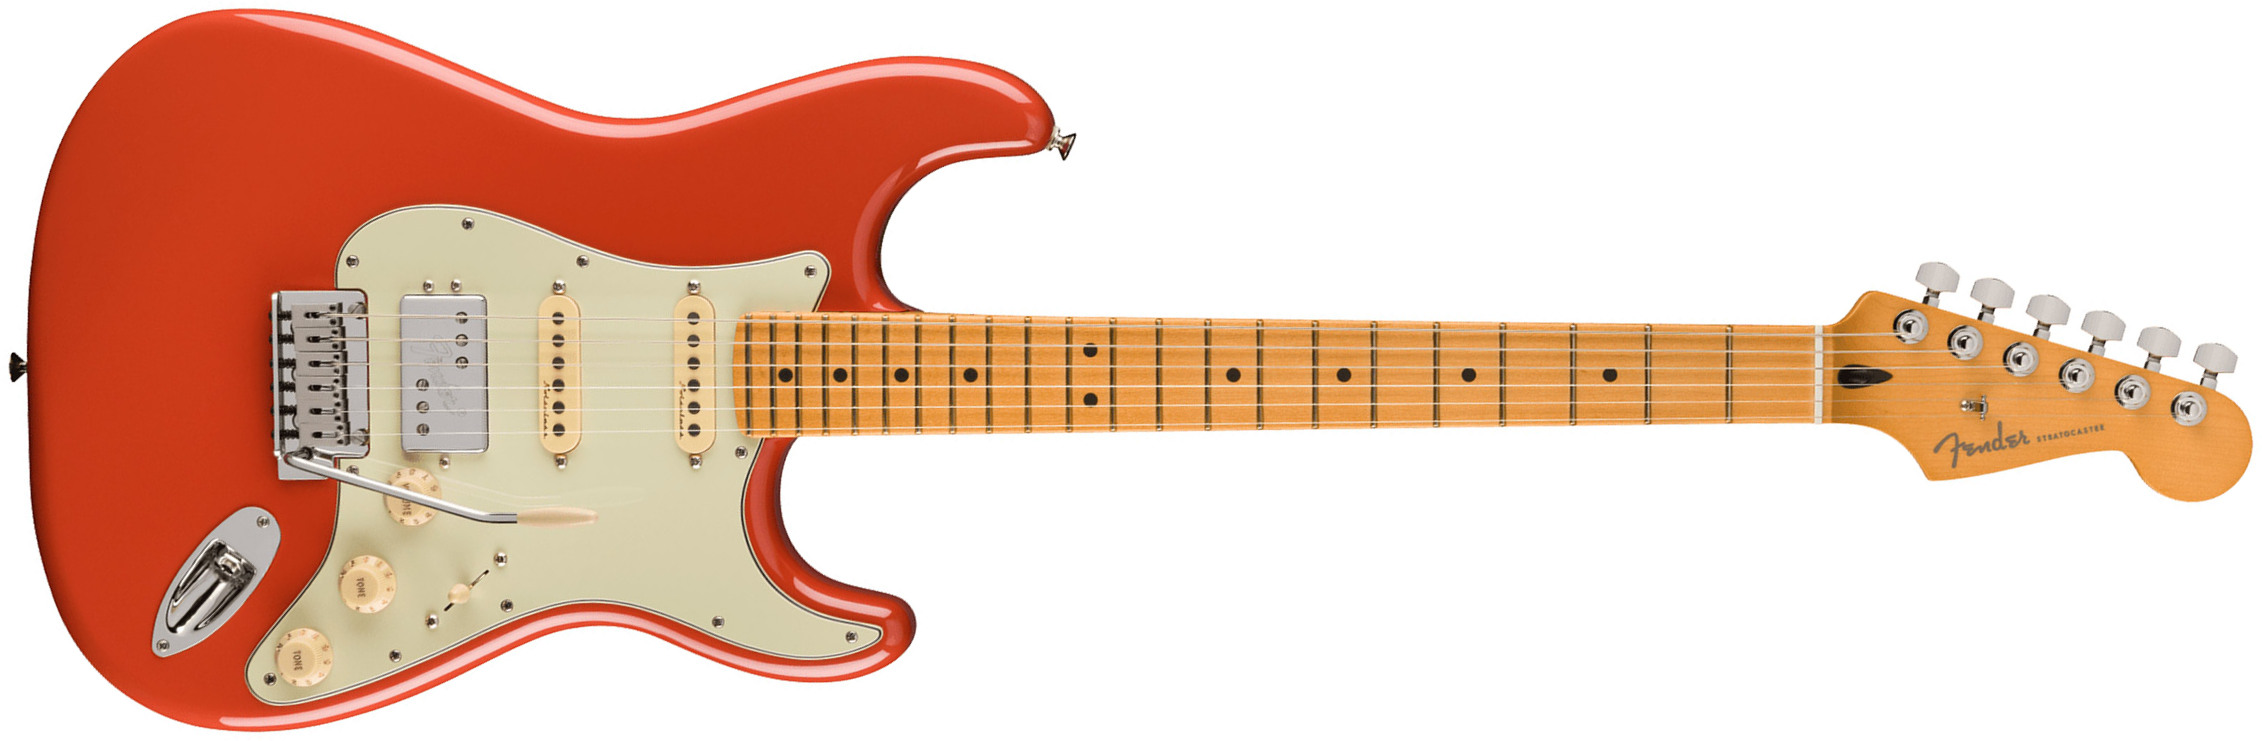 Fender Strat Player Plus Mex 2023 Hss Trem Mn - Fiesta Red - Guitare Électrique Forme Str - Main picture